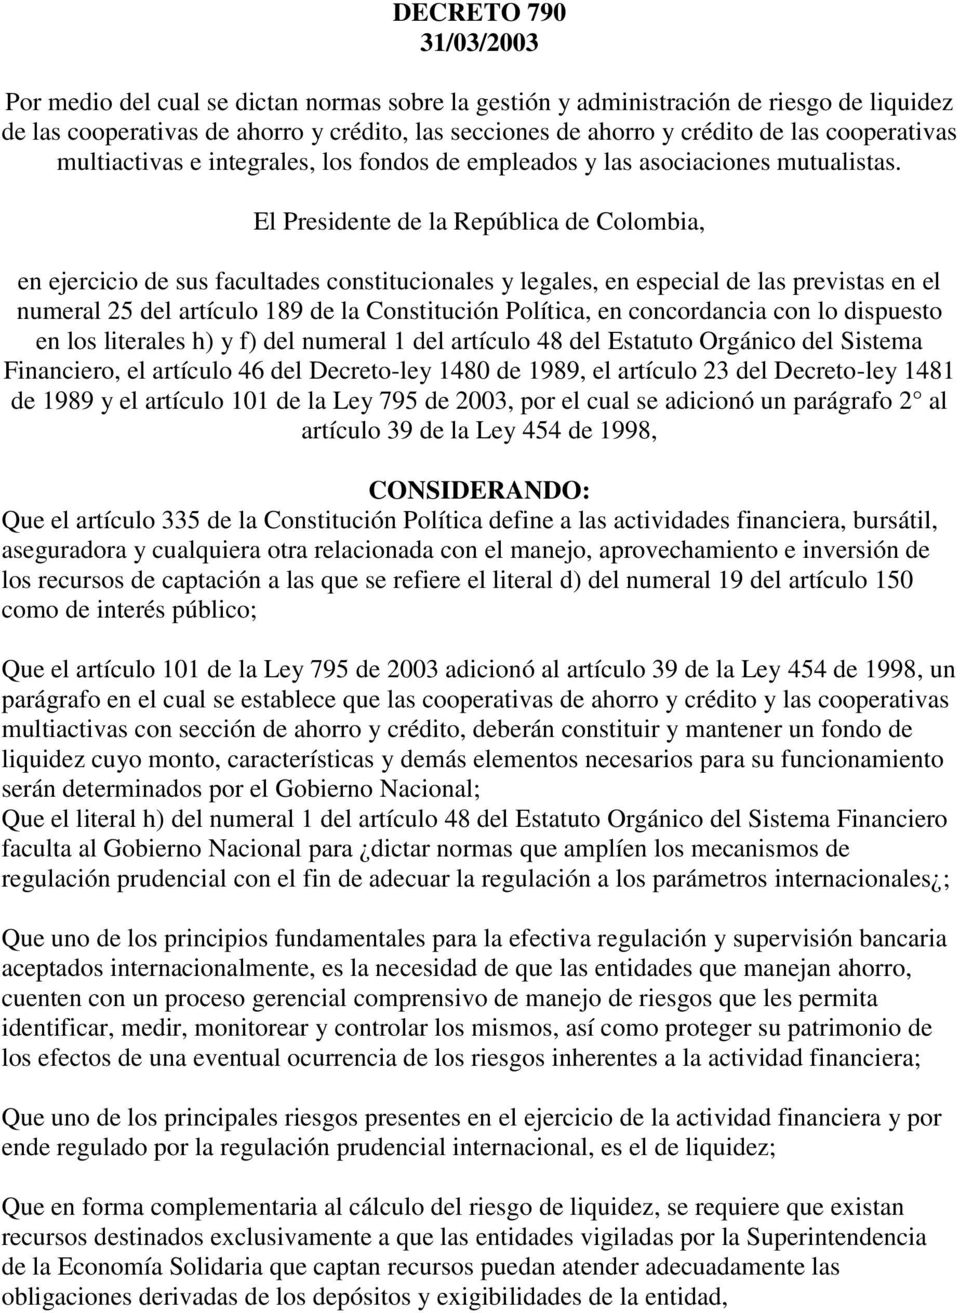 El Presidente de la República de Colombia, en ejercicio de sus facultades constitucionales y legales, en especial de las previstas en el numeral 25 del artículo 189 de la Constitución Política, en